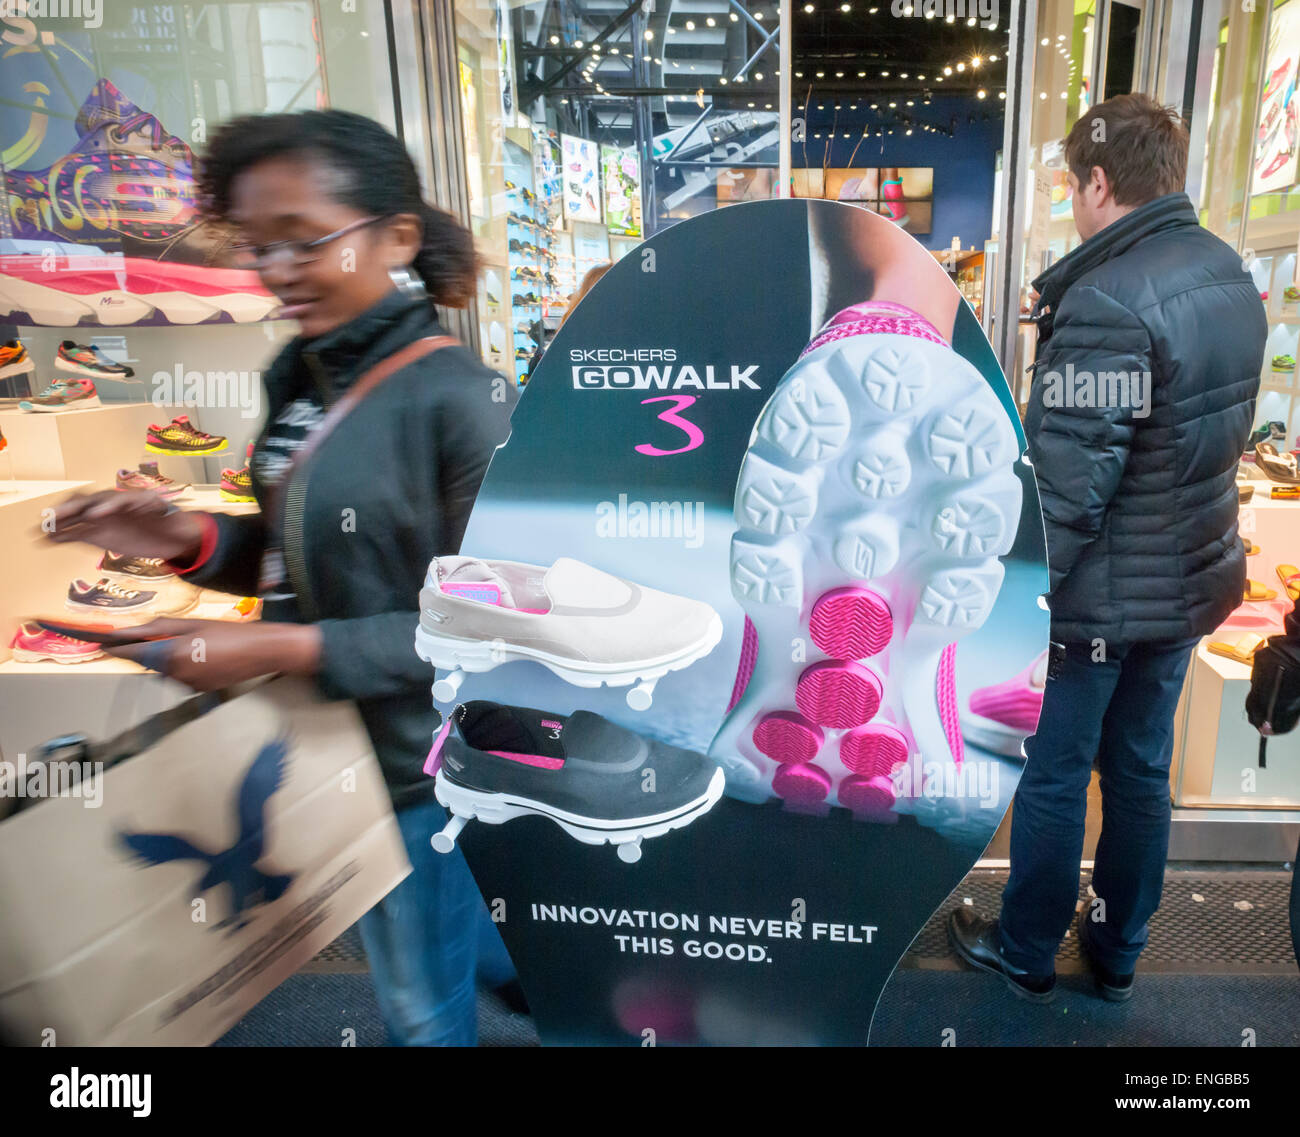 Il Skechers store in Times Square a New York venerdì 1 maggio 2015. Il  marchio è recentemente stato consacrato uno dei più sottovalutati scarpa  società in America dagli analisti che sentono che